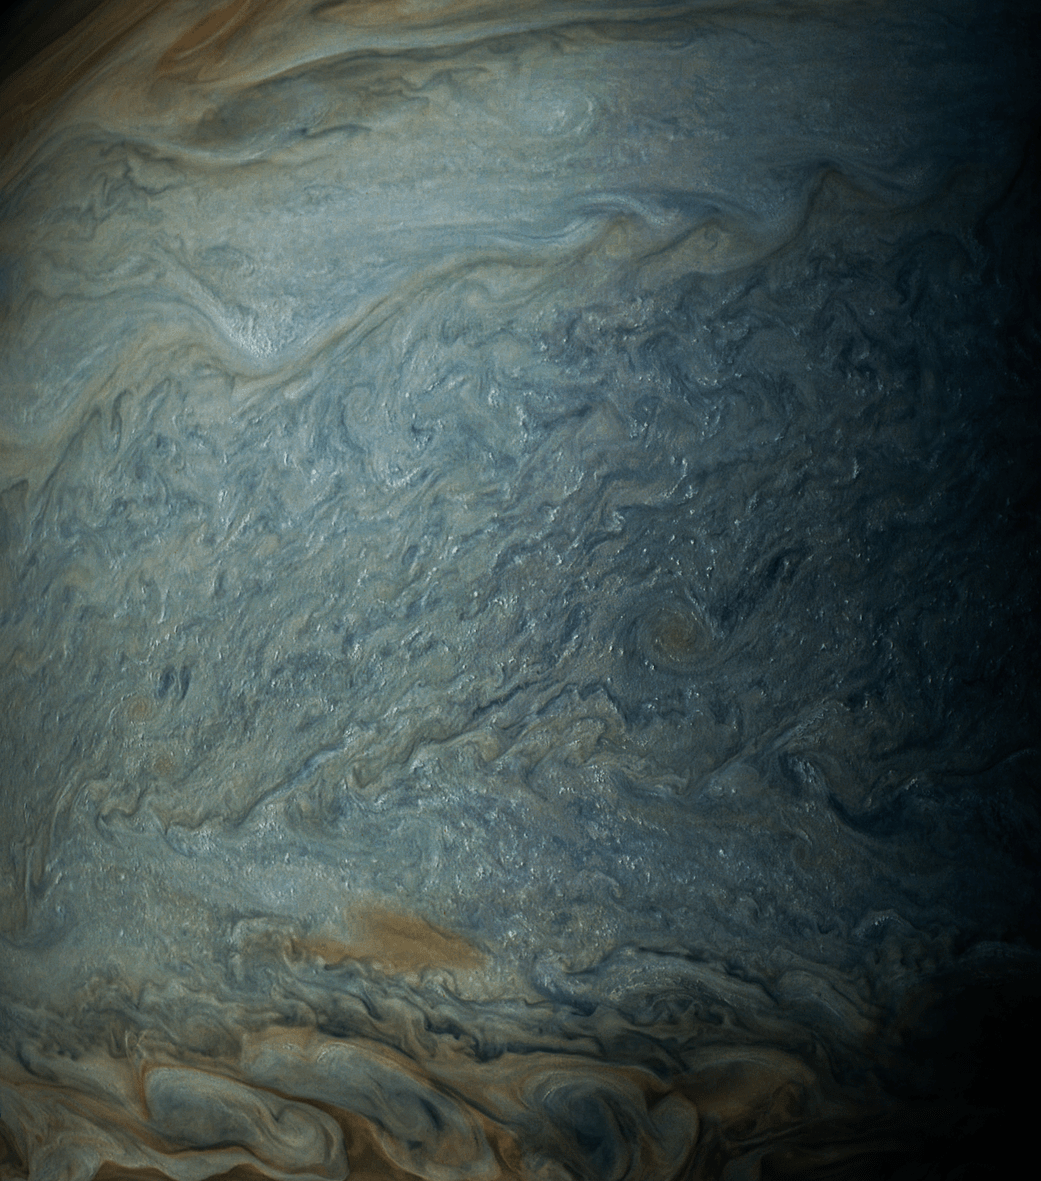 Juno telecon image